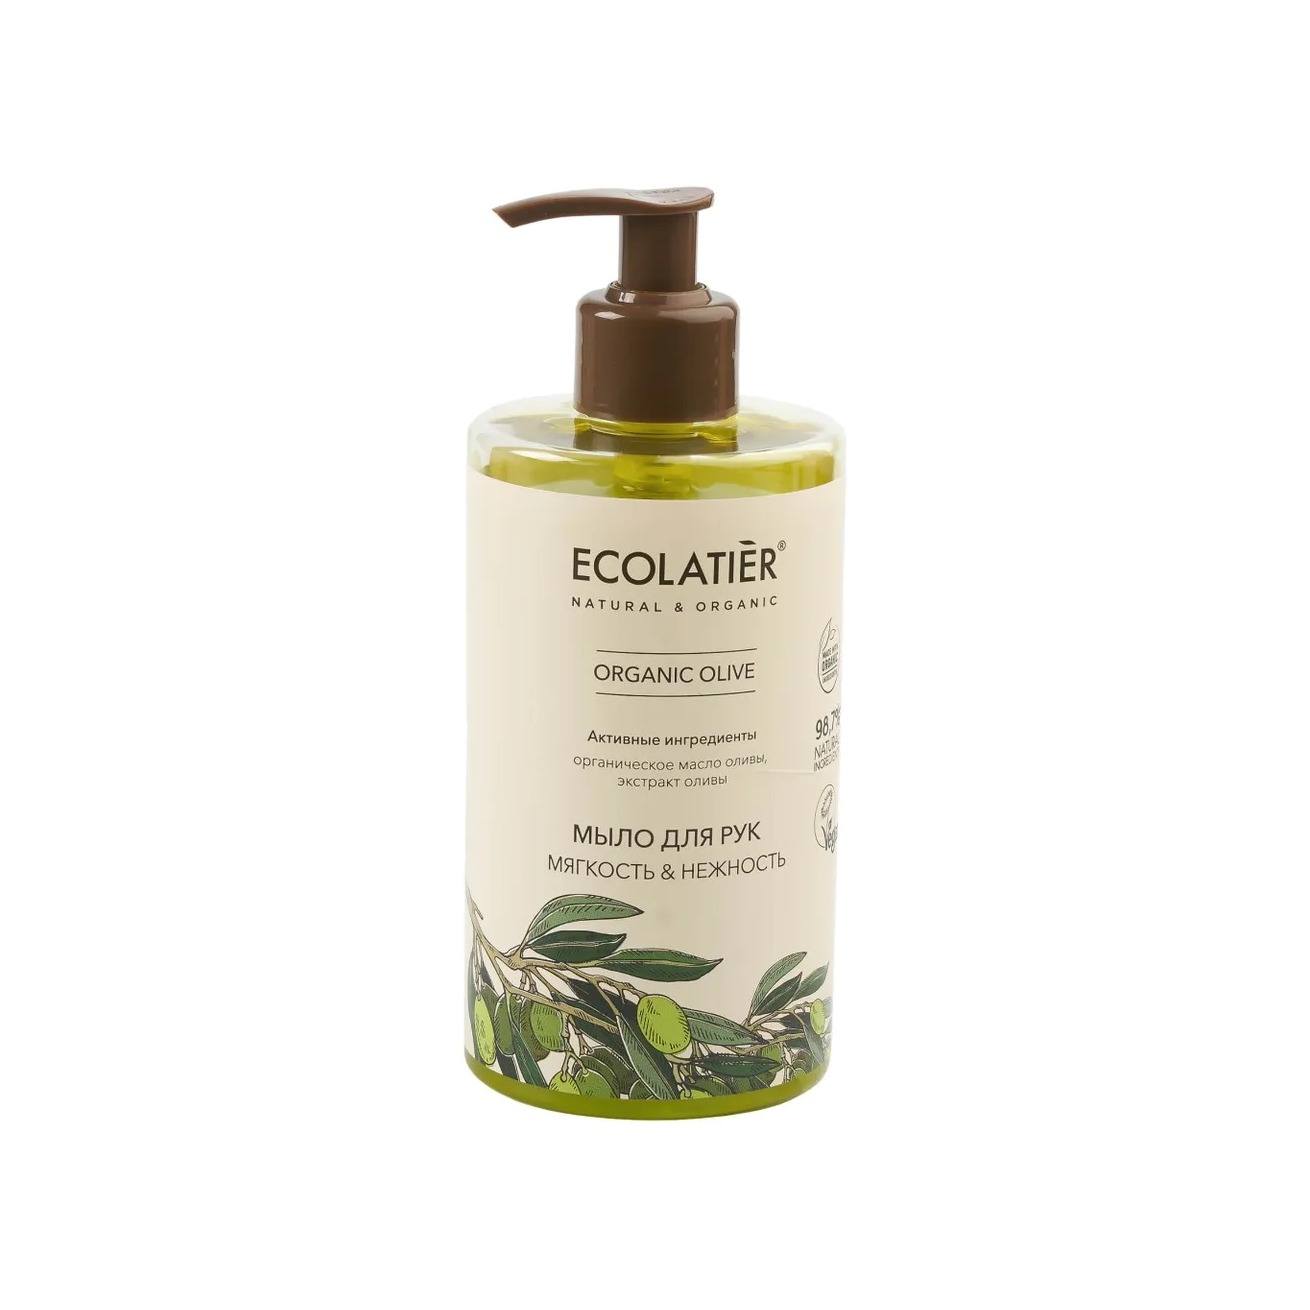 Жидкое мыло для рук Мягкость & Нежность Green Olive Oil VISAGEHALL